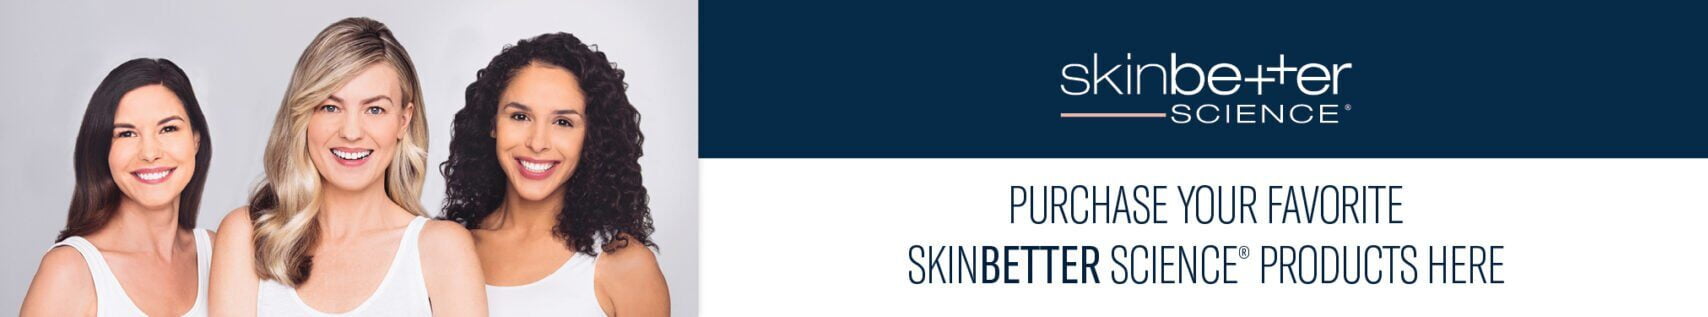 Skinbetter science skincare shop web banner